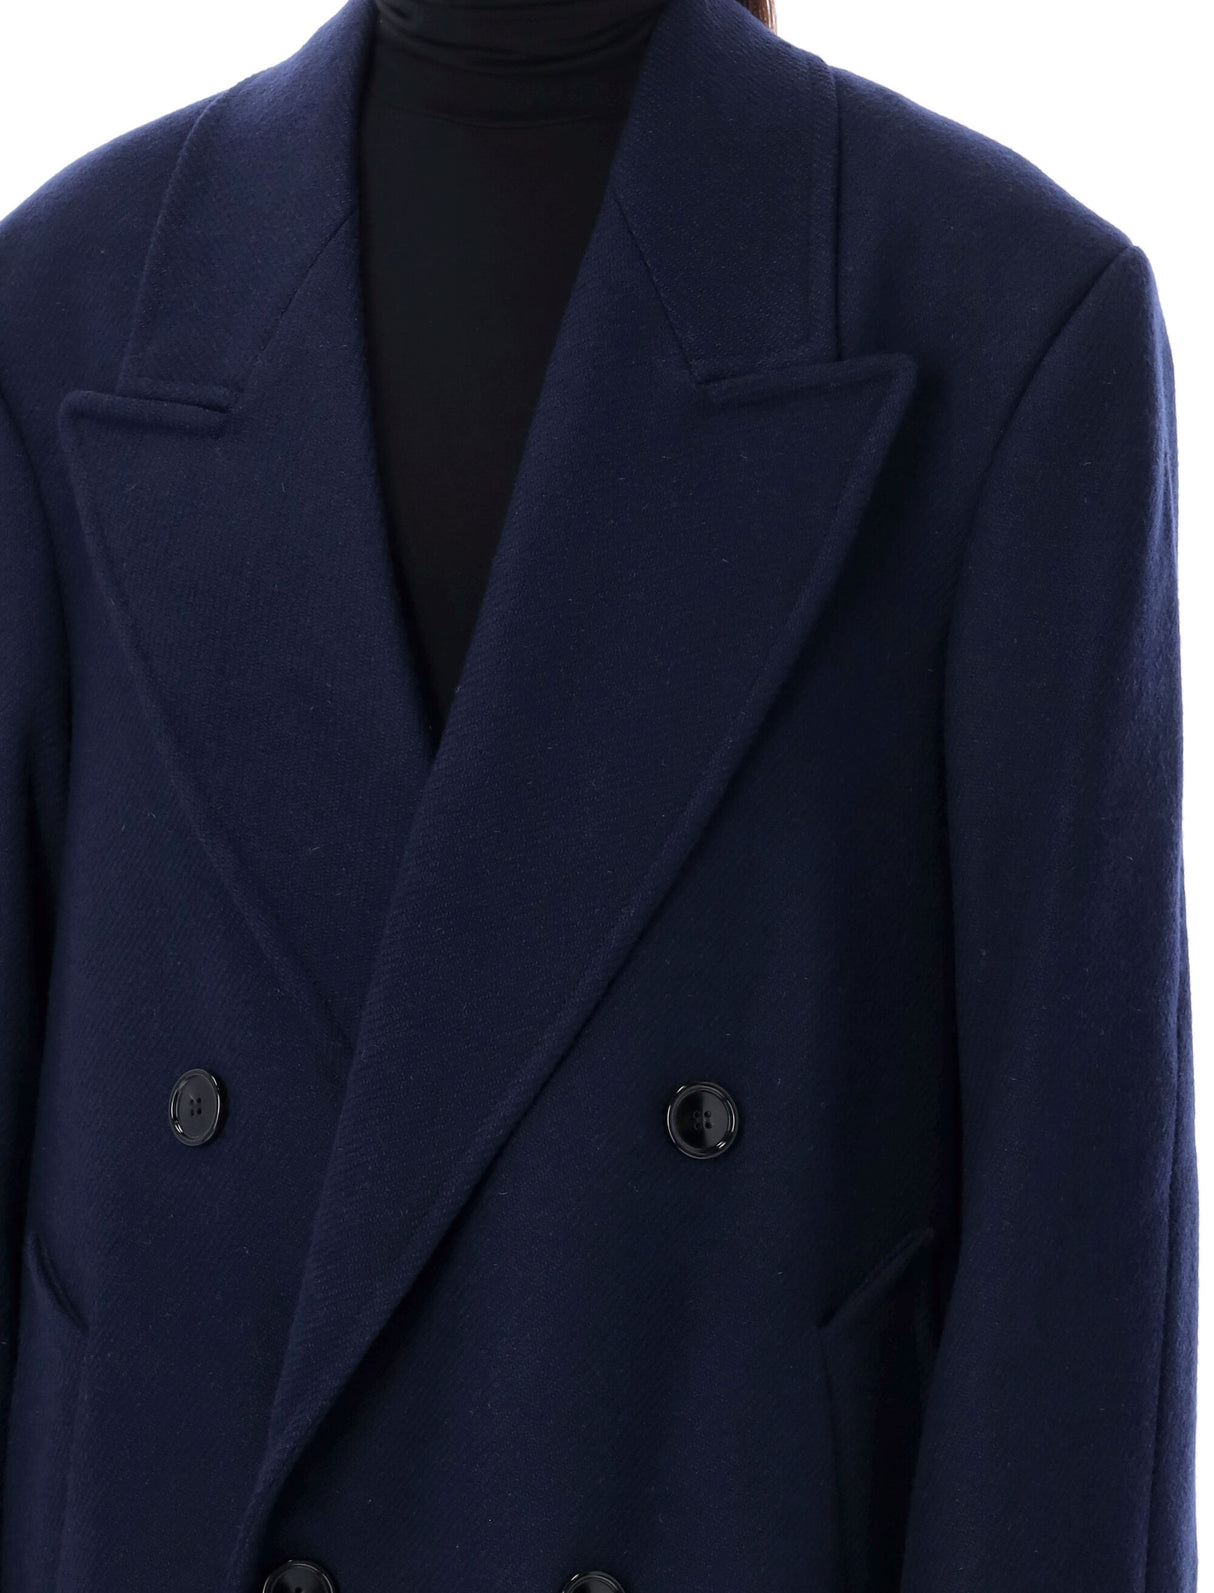 Áo khoác hai hàng mũi tàu màu xanh dương cho nữ với kiểu dáng đơn giản và đường viền xòe